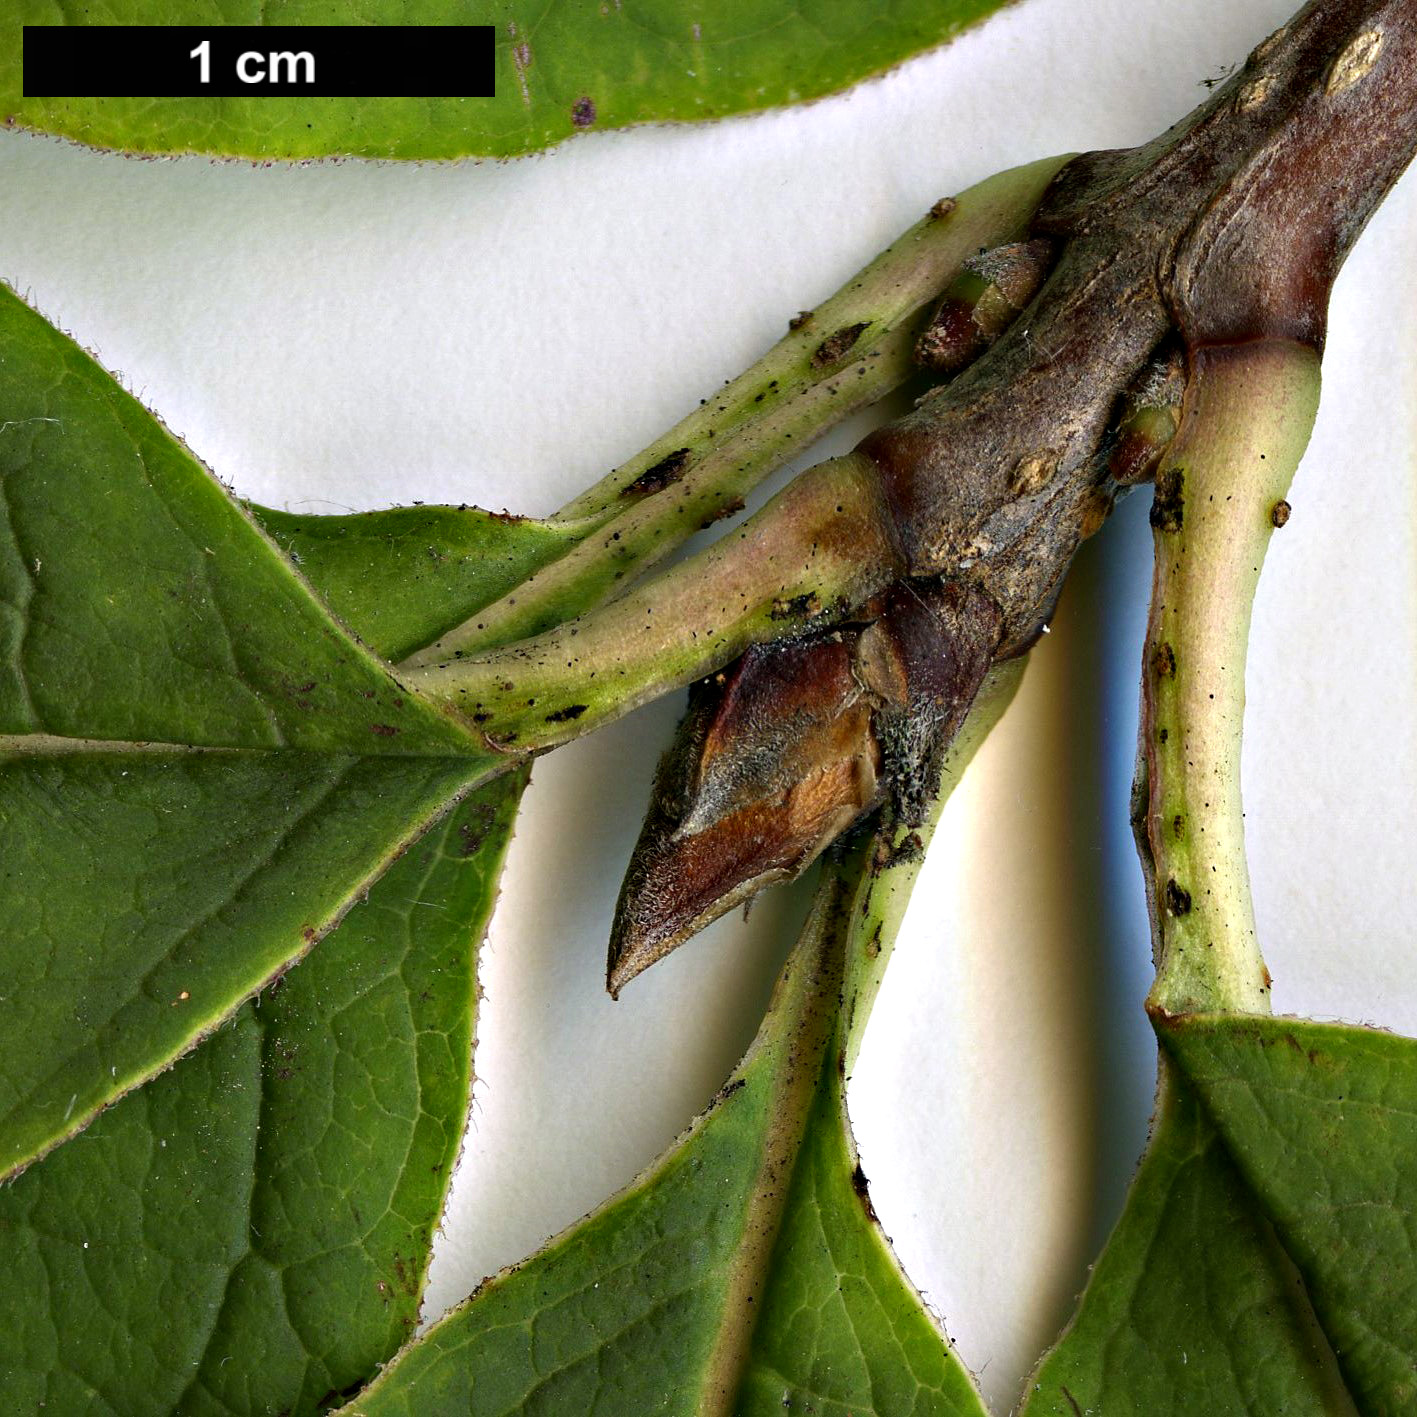 High resolution image: Family: Oleaceae - Genus: Syringa - Taxon: villosa - SpeciesSub: subsp. wolfii